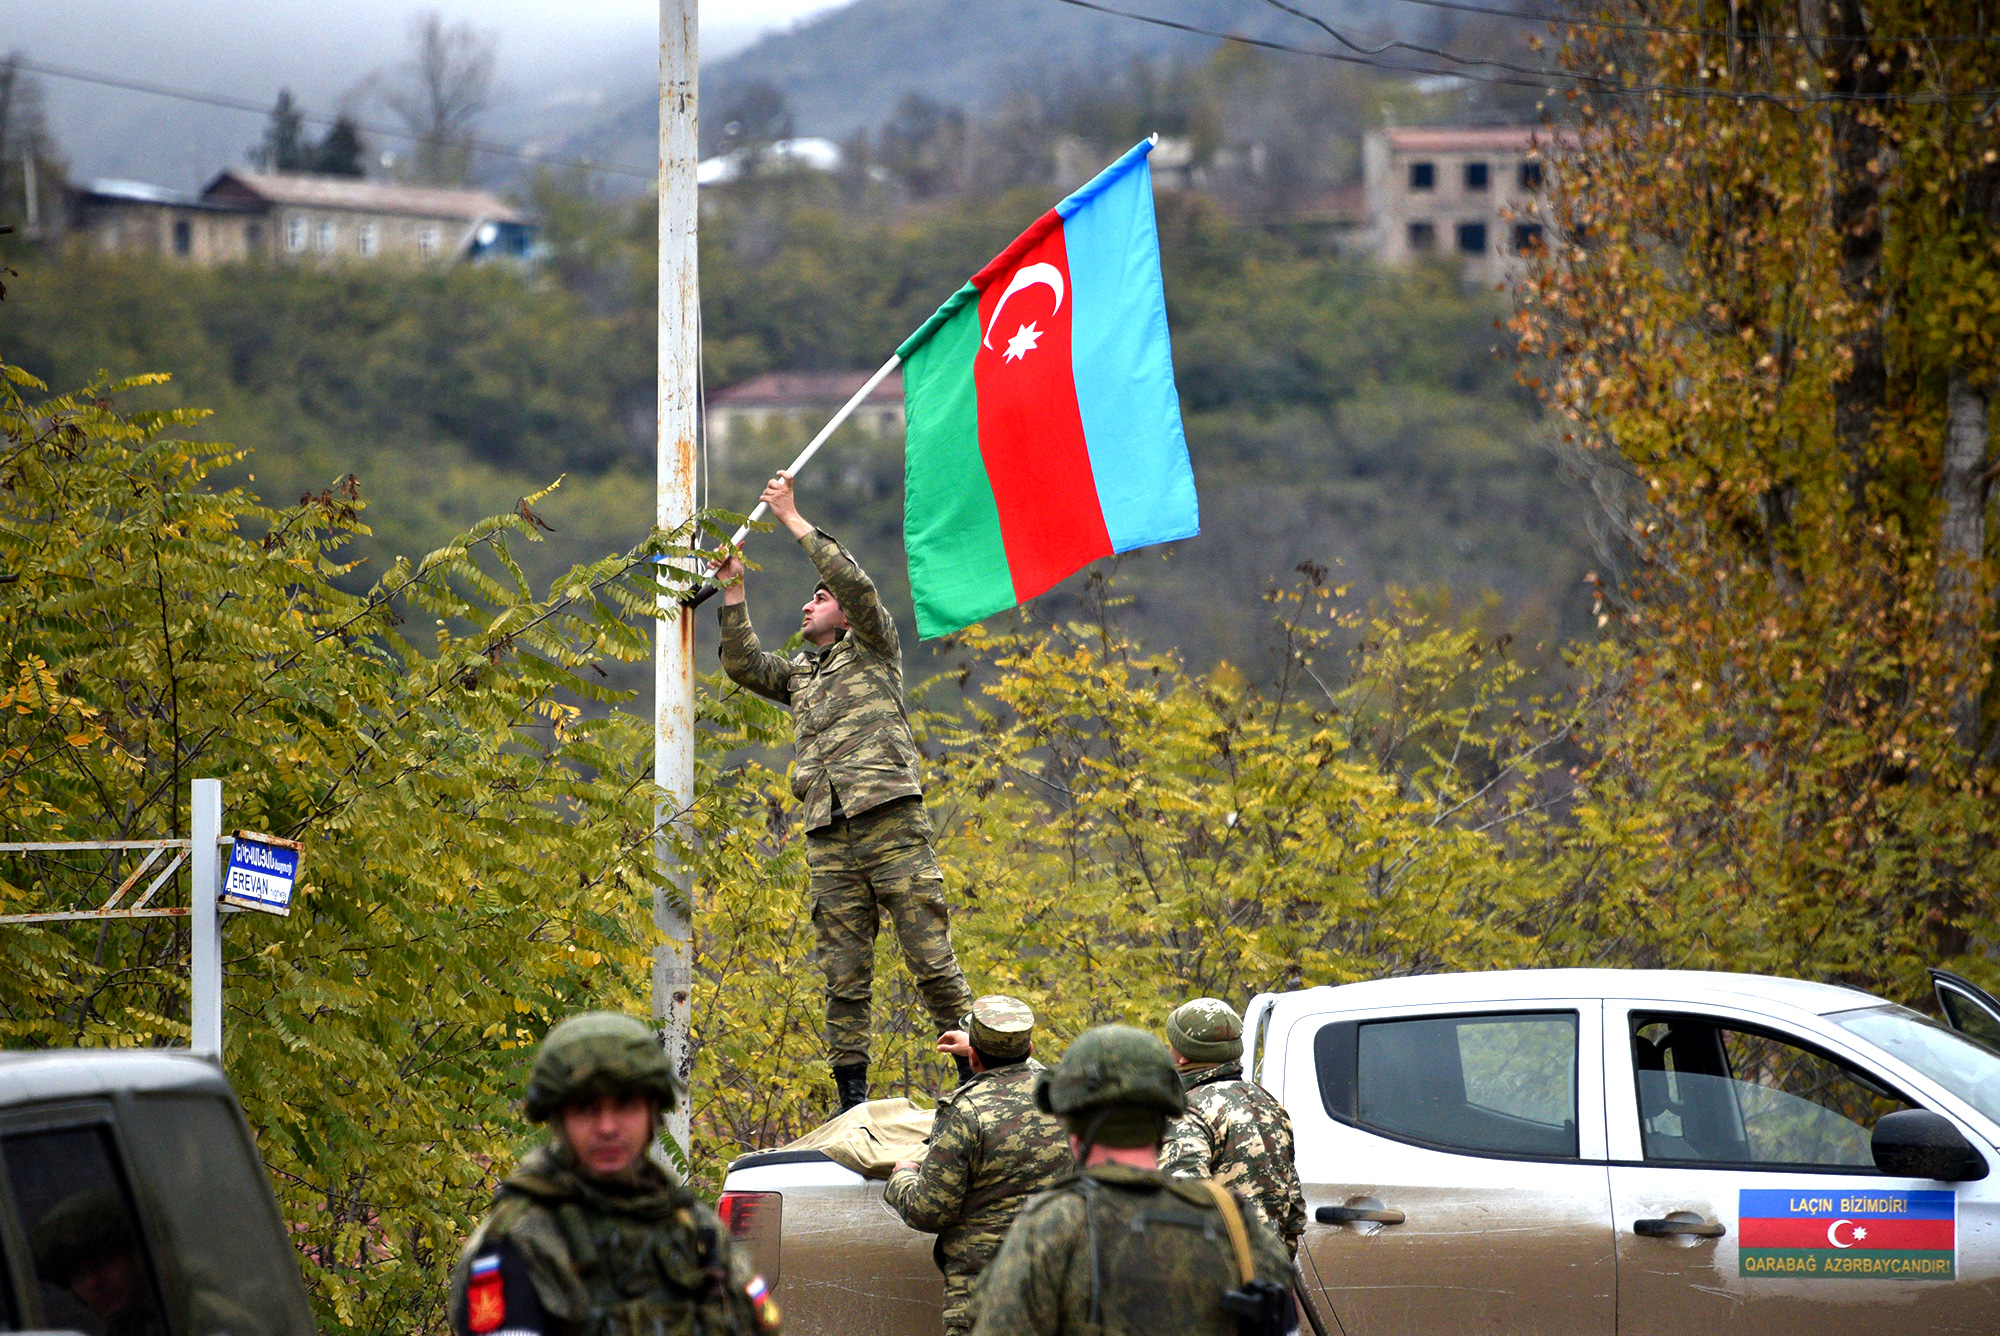 Quân đội Armenia giao tranh với Azerbaijan ở khu vực biên giới - Ảnh 1.